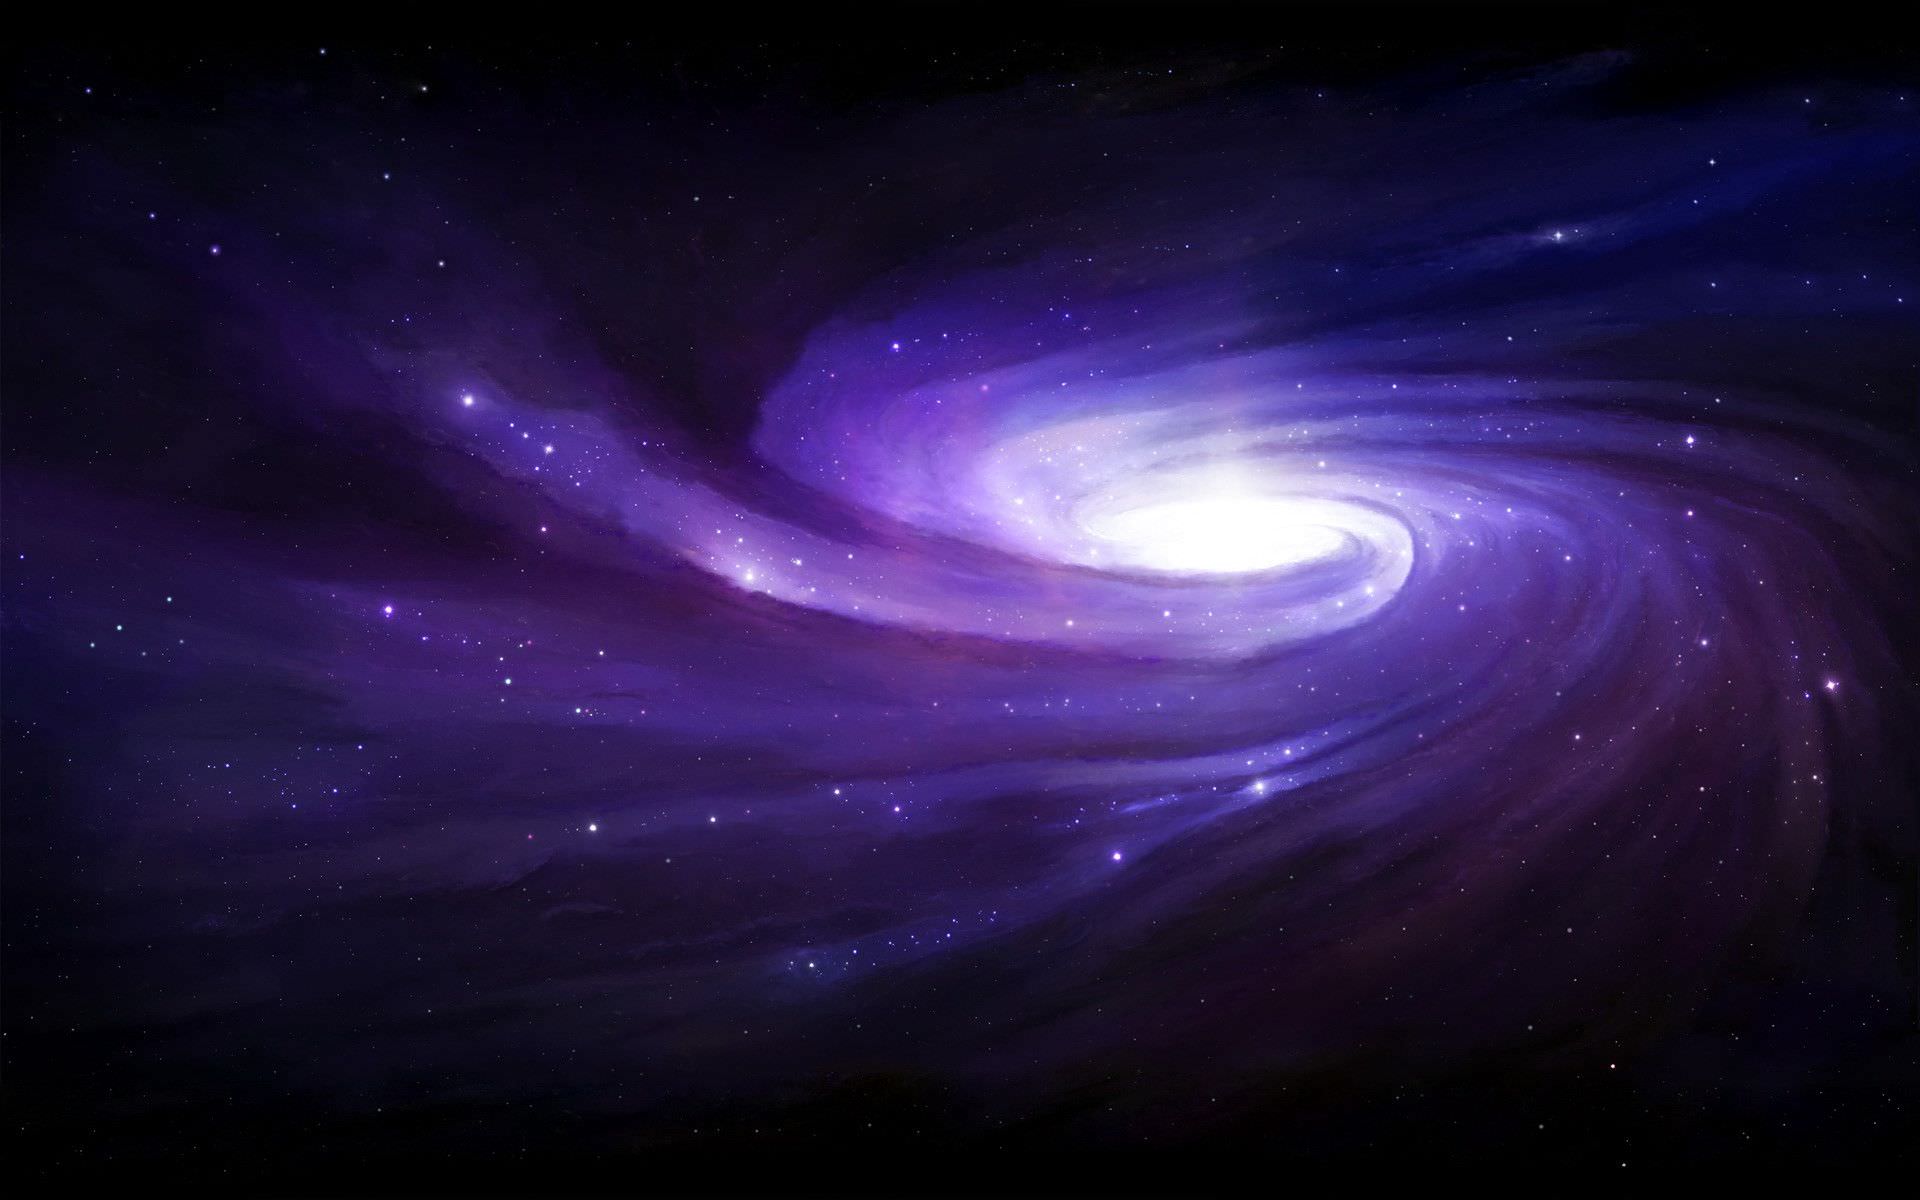 Nền Galaxy miễn phí: Đừng bỏ lỡ cơ hội được thưởng thức nền Galaxy miễn phí đầy đẹp mắt này. Tận hưởng những khoảnh khắc đầy dịu dàng và lãng mạn, khi ngắm nhìn những cụm sao lấp lánh, trên nền đen đặc của vũ trụ. Hãy click để cảm nhận!